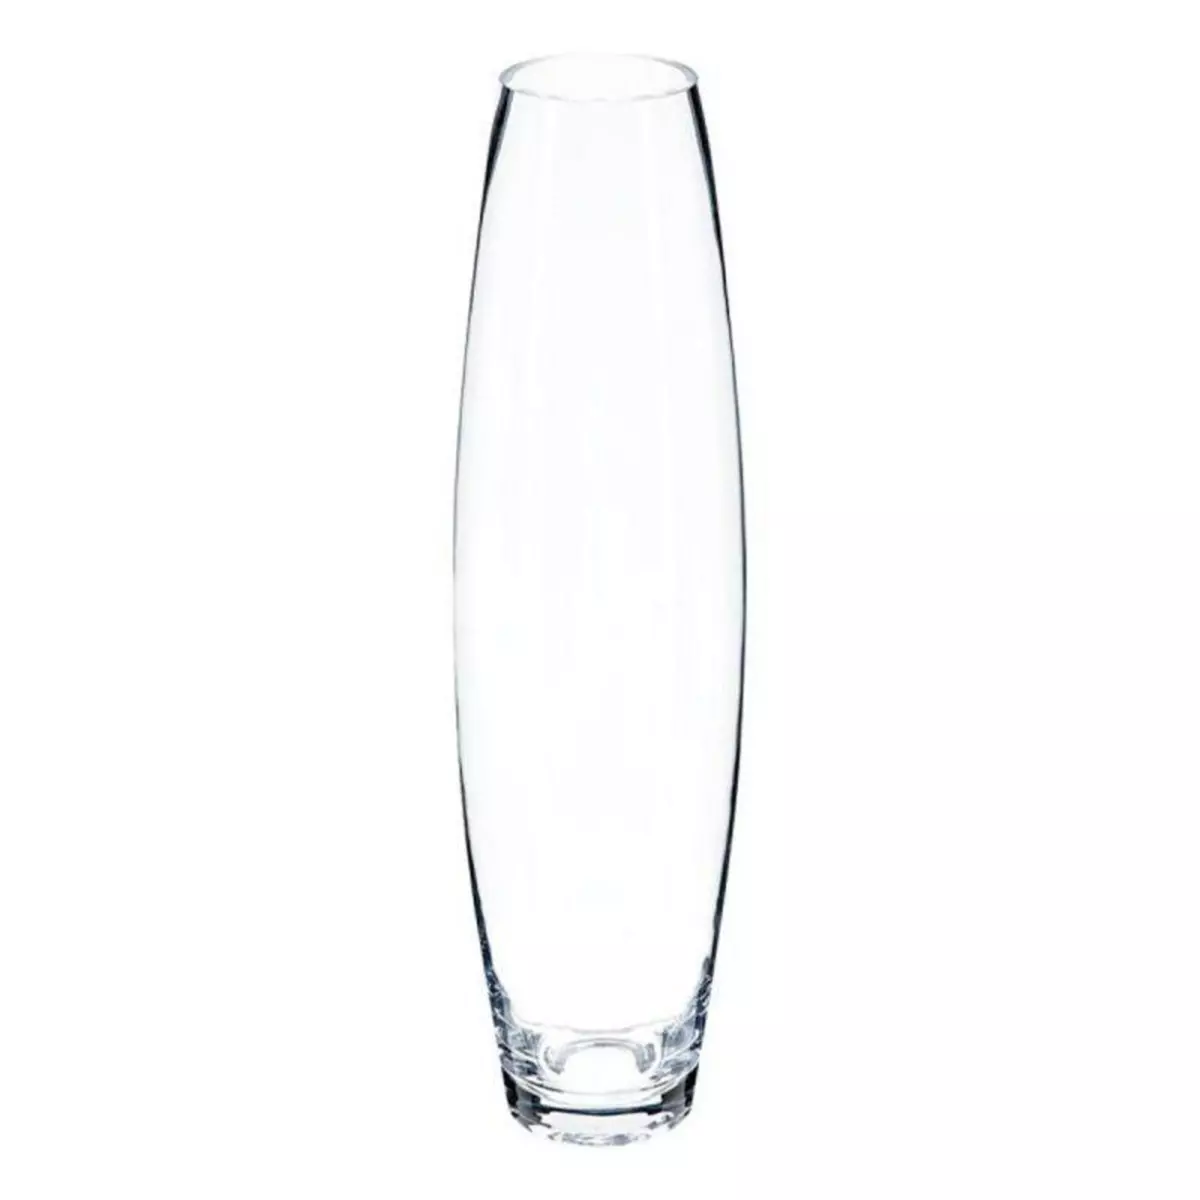 ATMOSPHERA Vase Déco en Verre  Clear  40cm Transparent